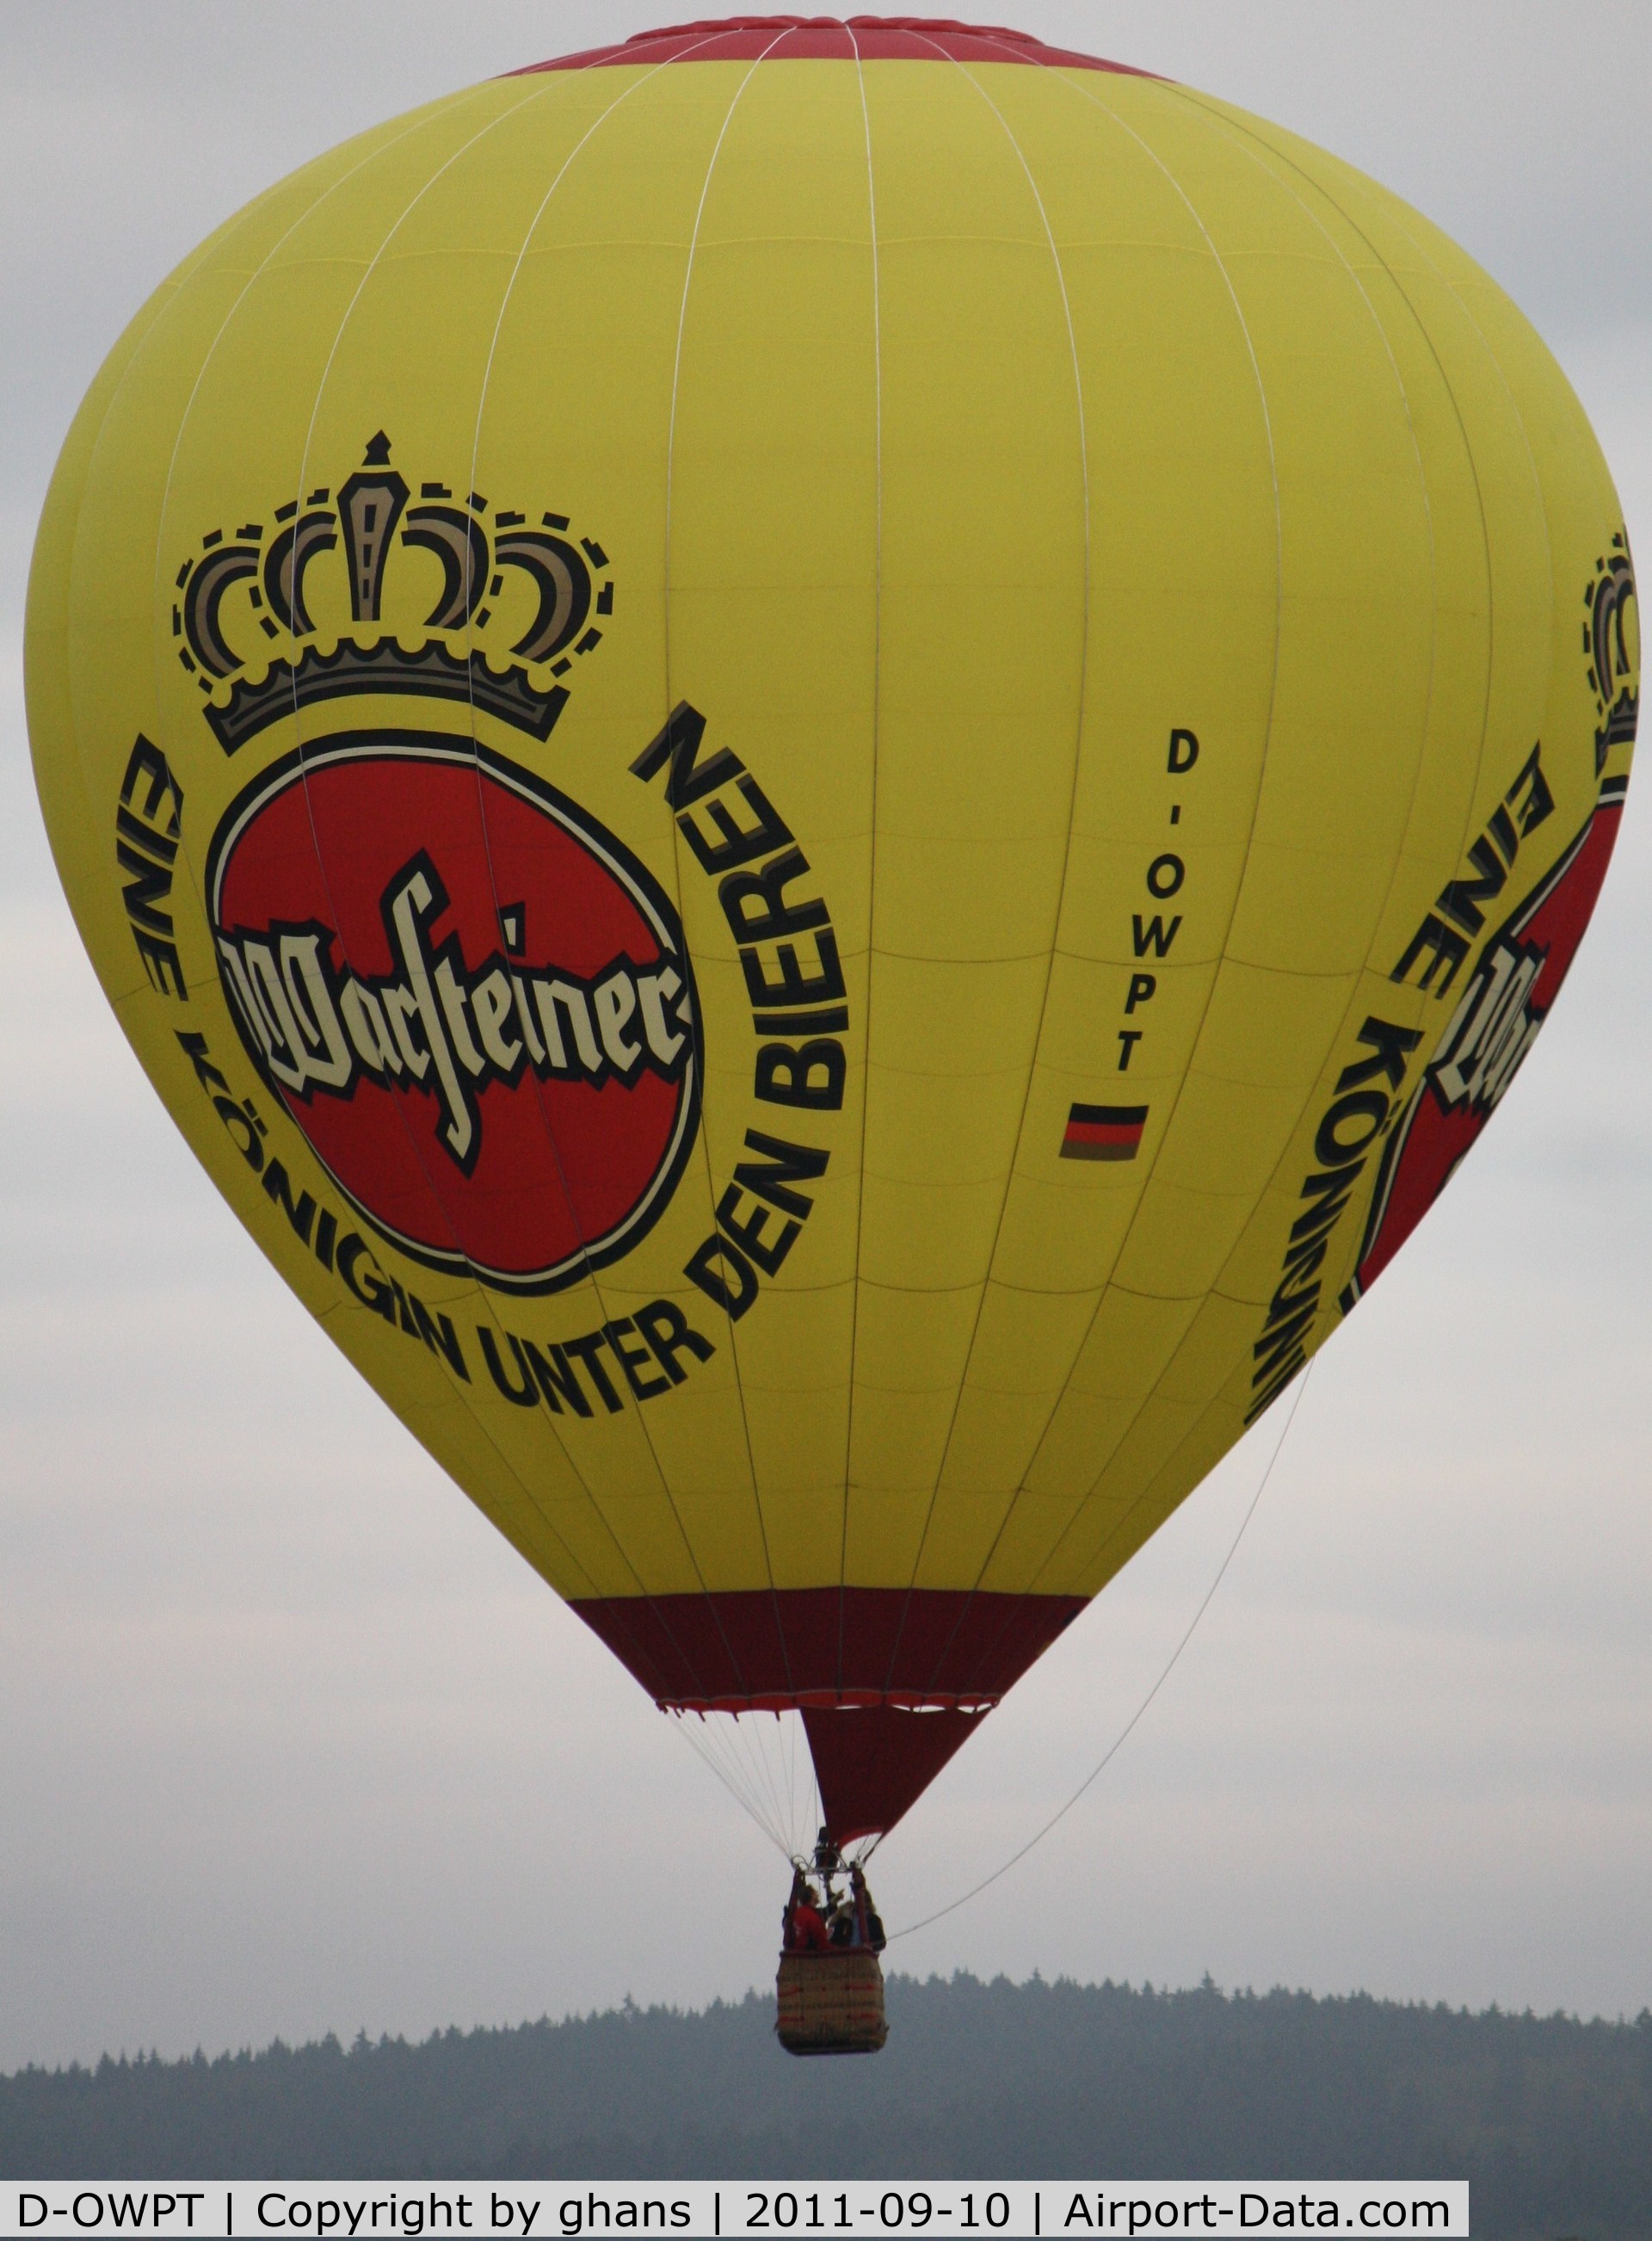 D-OWPT, 1998 Schroeder Fire Balloons G33/24 C/N 714, WIM 2011
'Warsteiner'